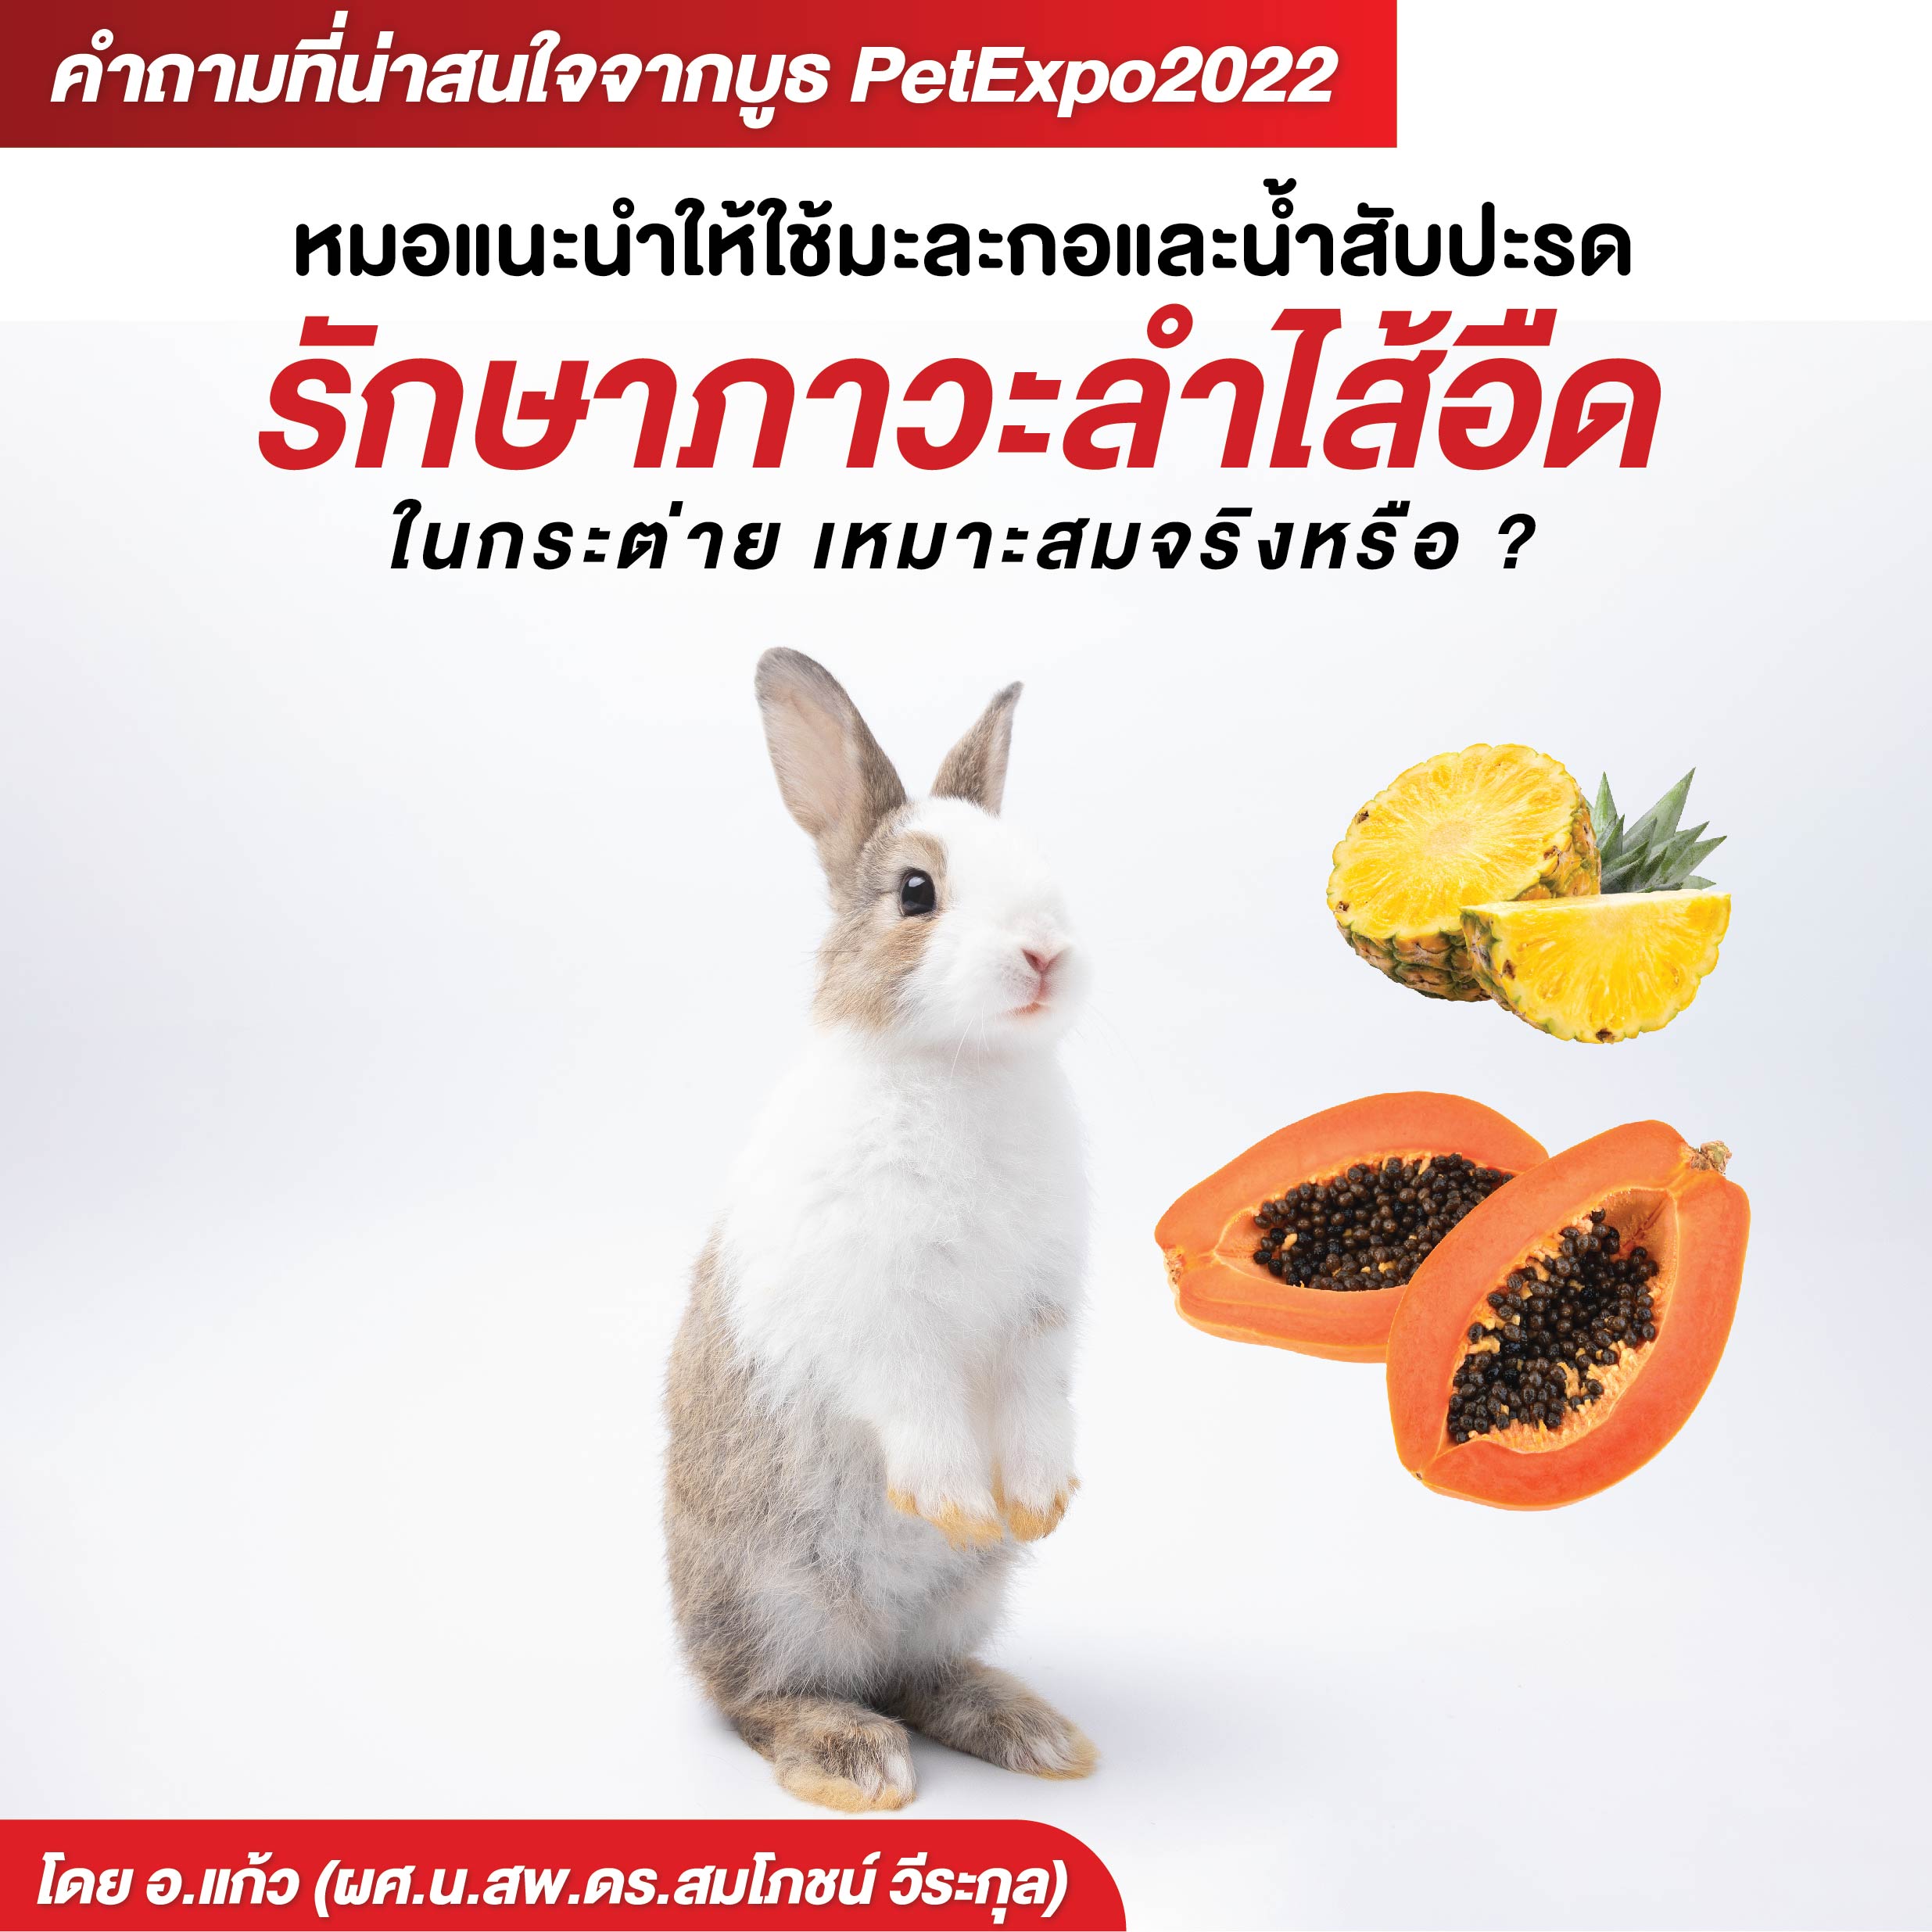 หมอแนะนำให้ใช้มะละกอและน้ำสับปะรดรักษาภาวะลำไส้อืดในกระต่าย? เหมาะสมจริงหรือ ?